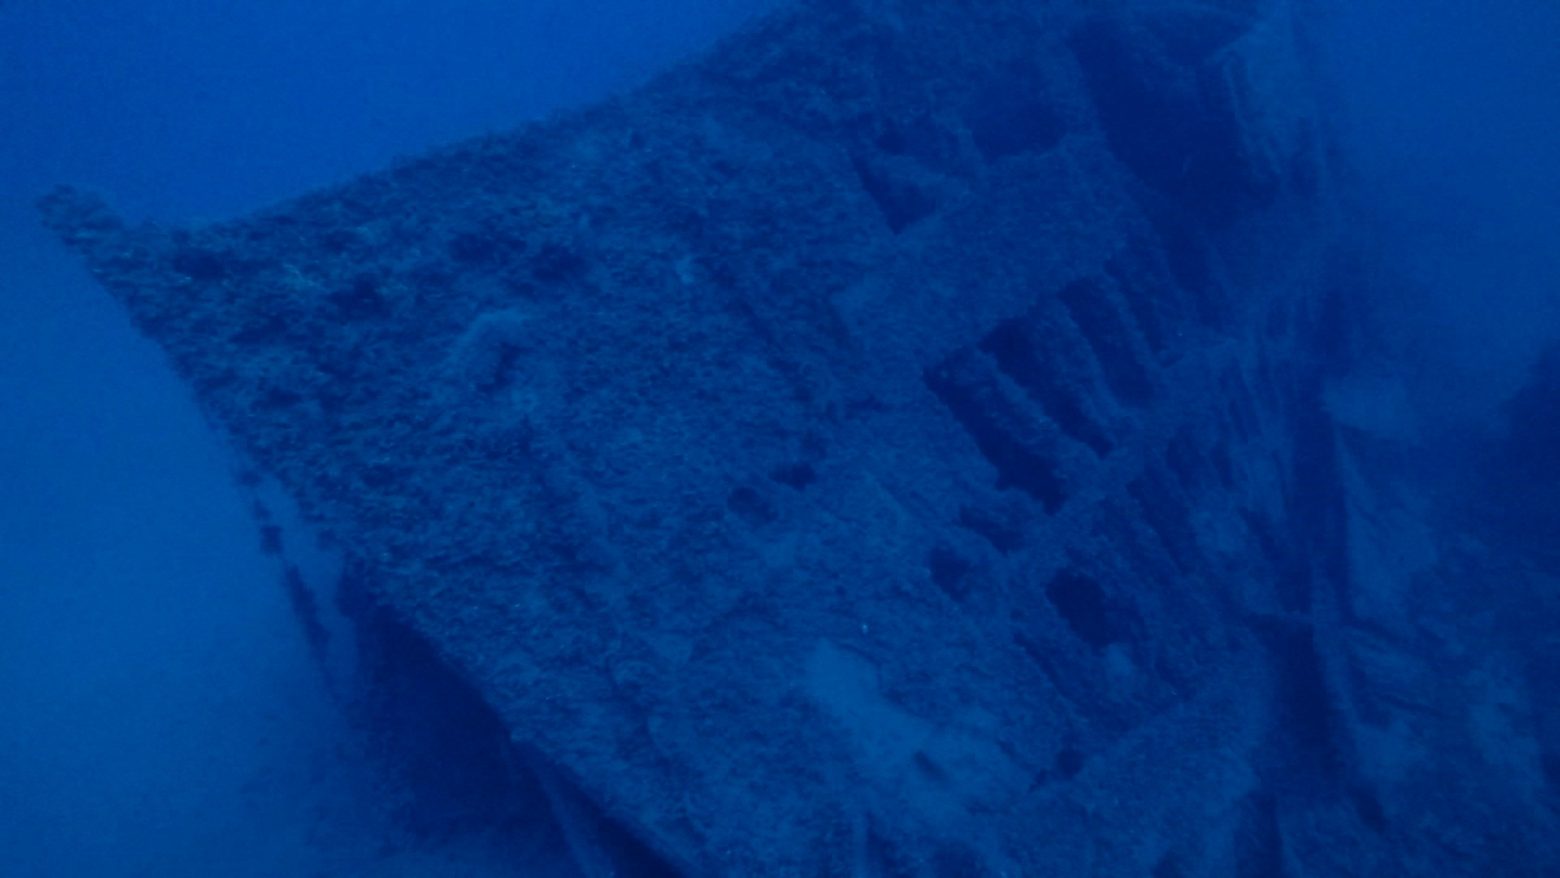 Ταυτοποιήθηκε ναυάγιο στα νερά του Σουνίου 130 χρόνια μετά - Ποια είναι η ιστορία του Taormina